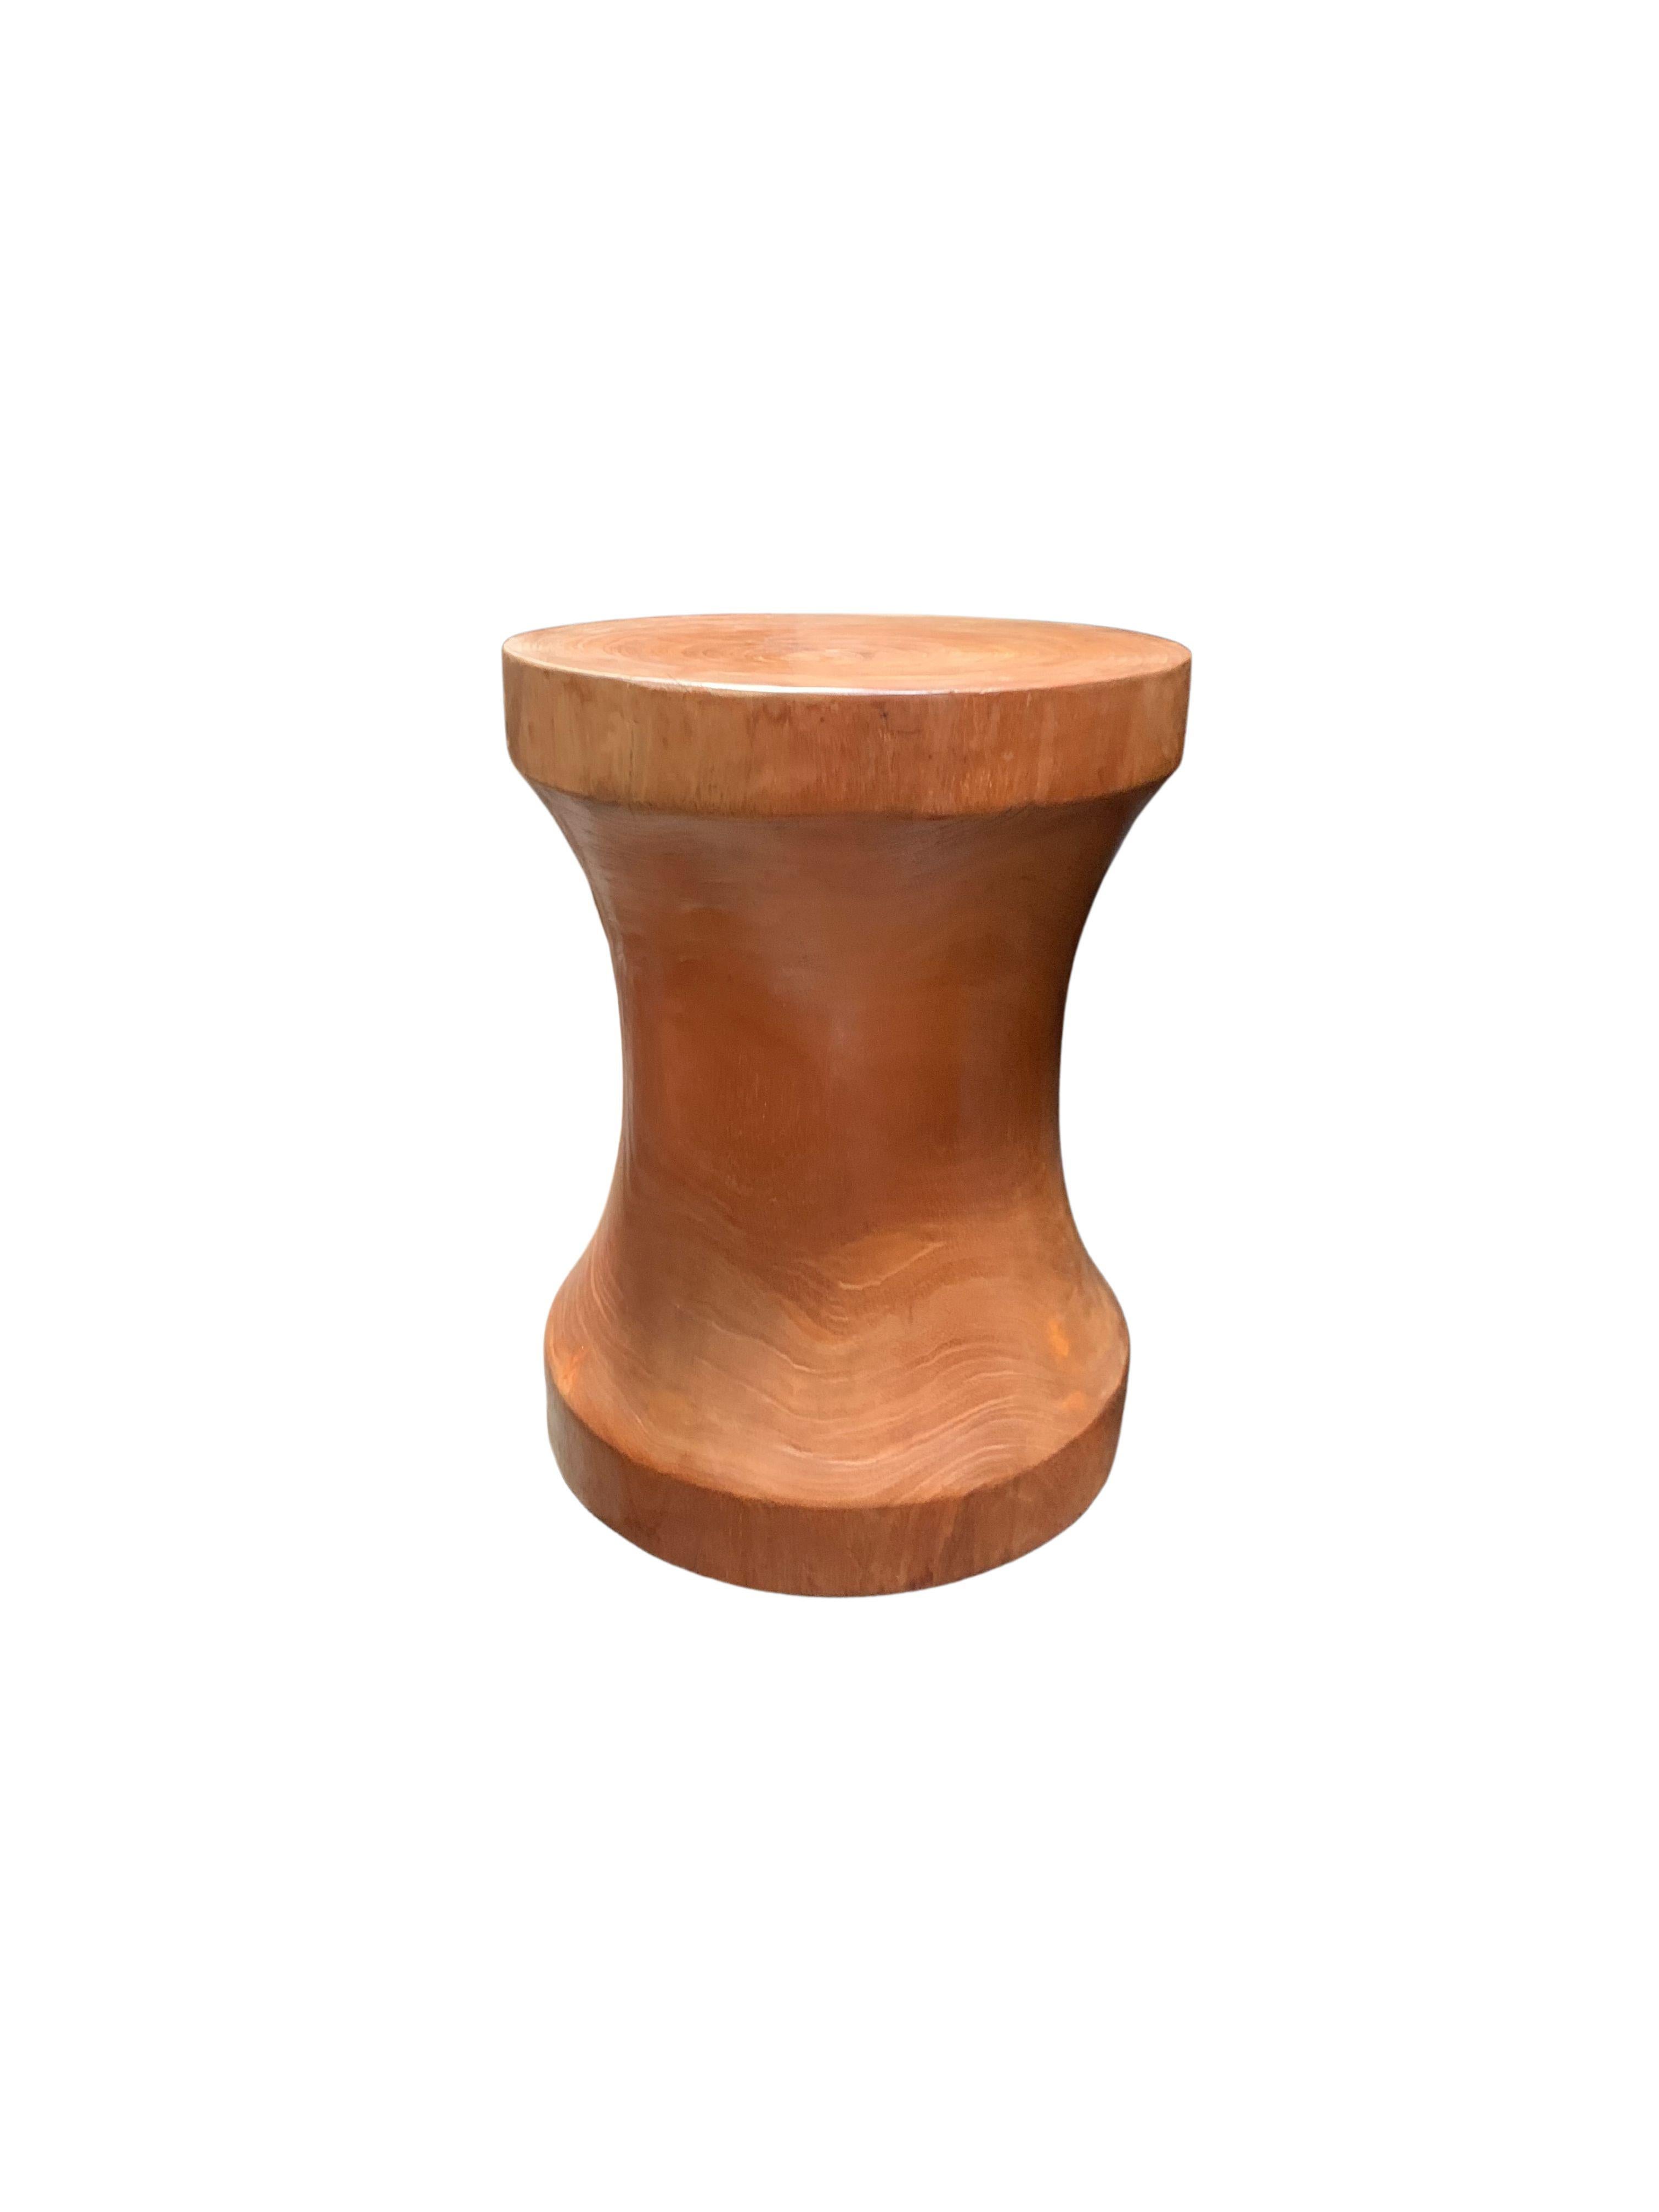 Une table d'appoint ronde merveilleusement sculpturale avec une finition transparente. Son pigment neutre et sa texture bois en font un produit parfait pour tout espace. Sculpté dans un tronc massif de bois de manguier, les textures du bois prennent